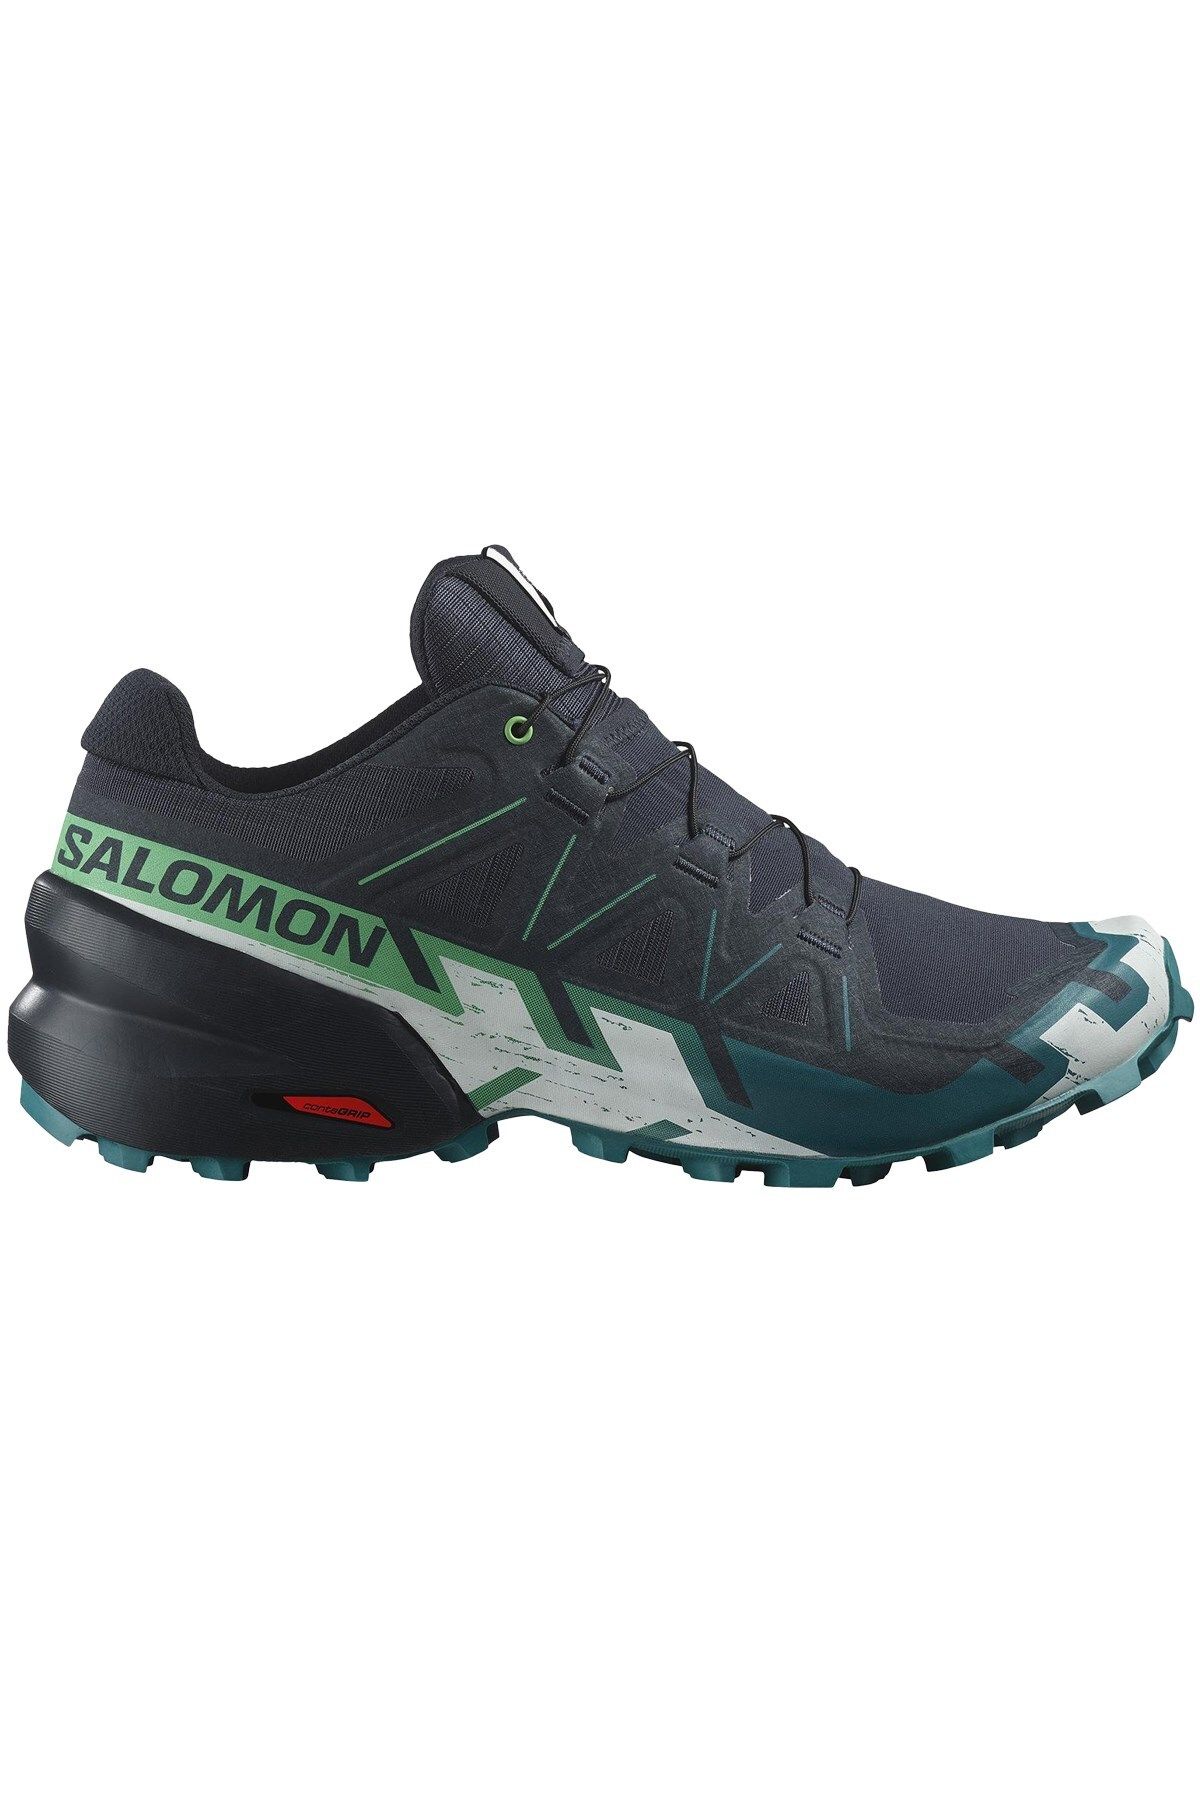 Salomon Speedcross 6 Erkek Outdoor Ayakkabı L47465300